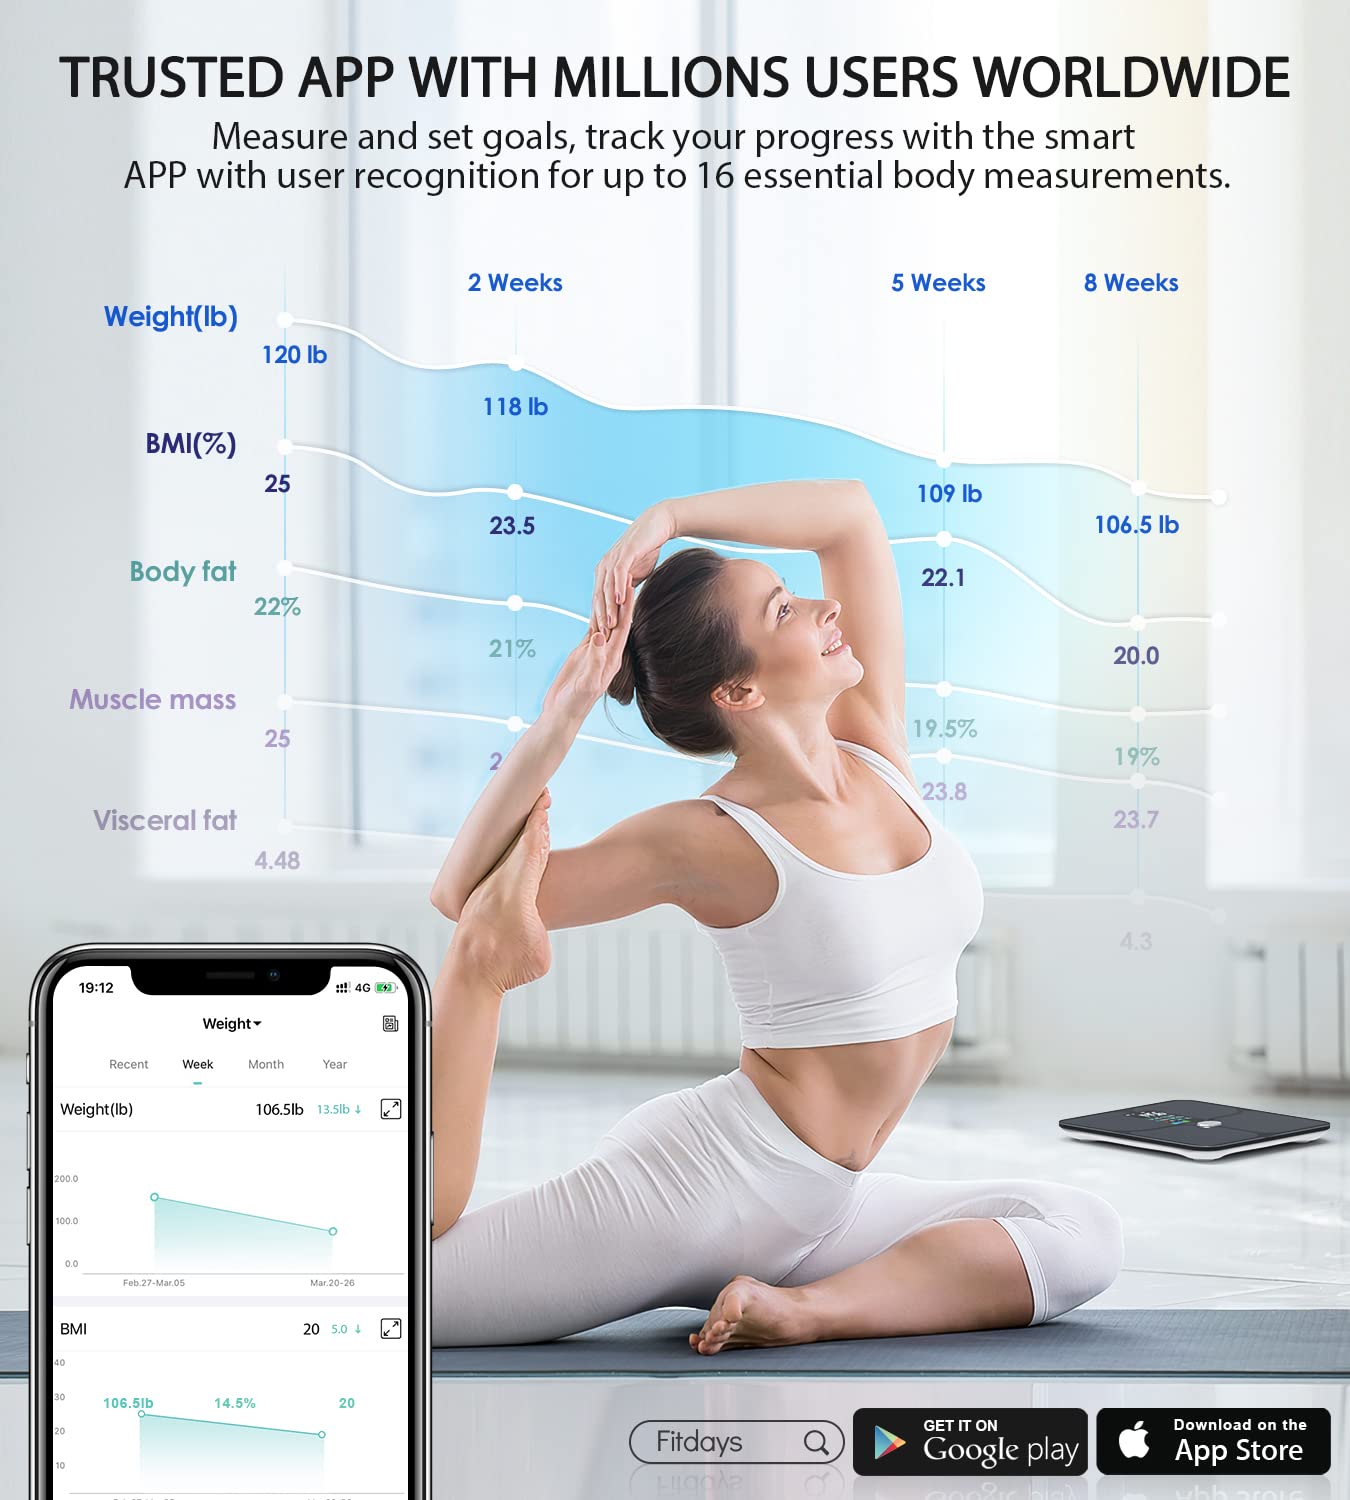 ABLEGRID Body Fat Scale, Smart WiFi Digital Bathroom Scale for Body We –